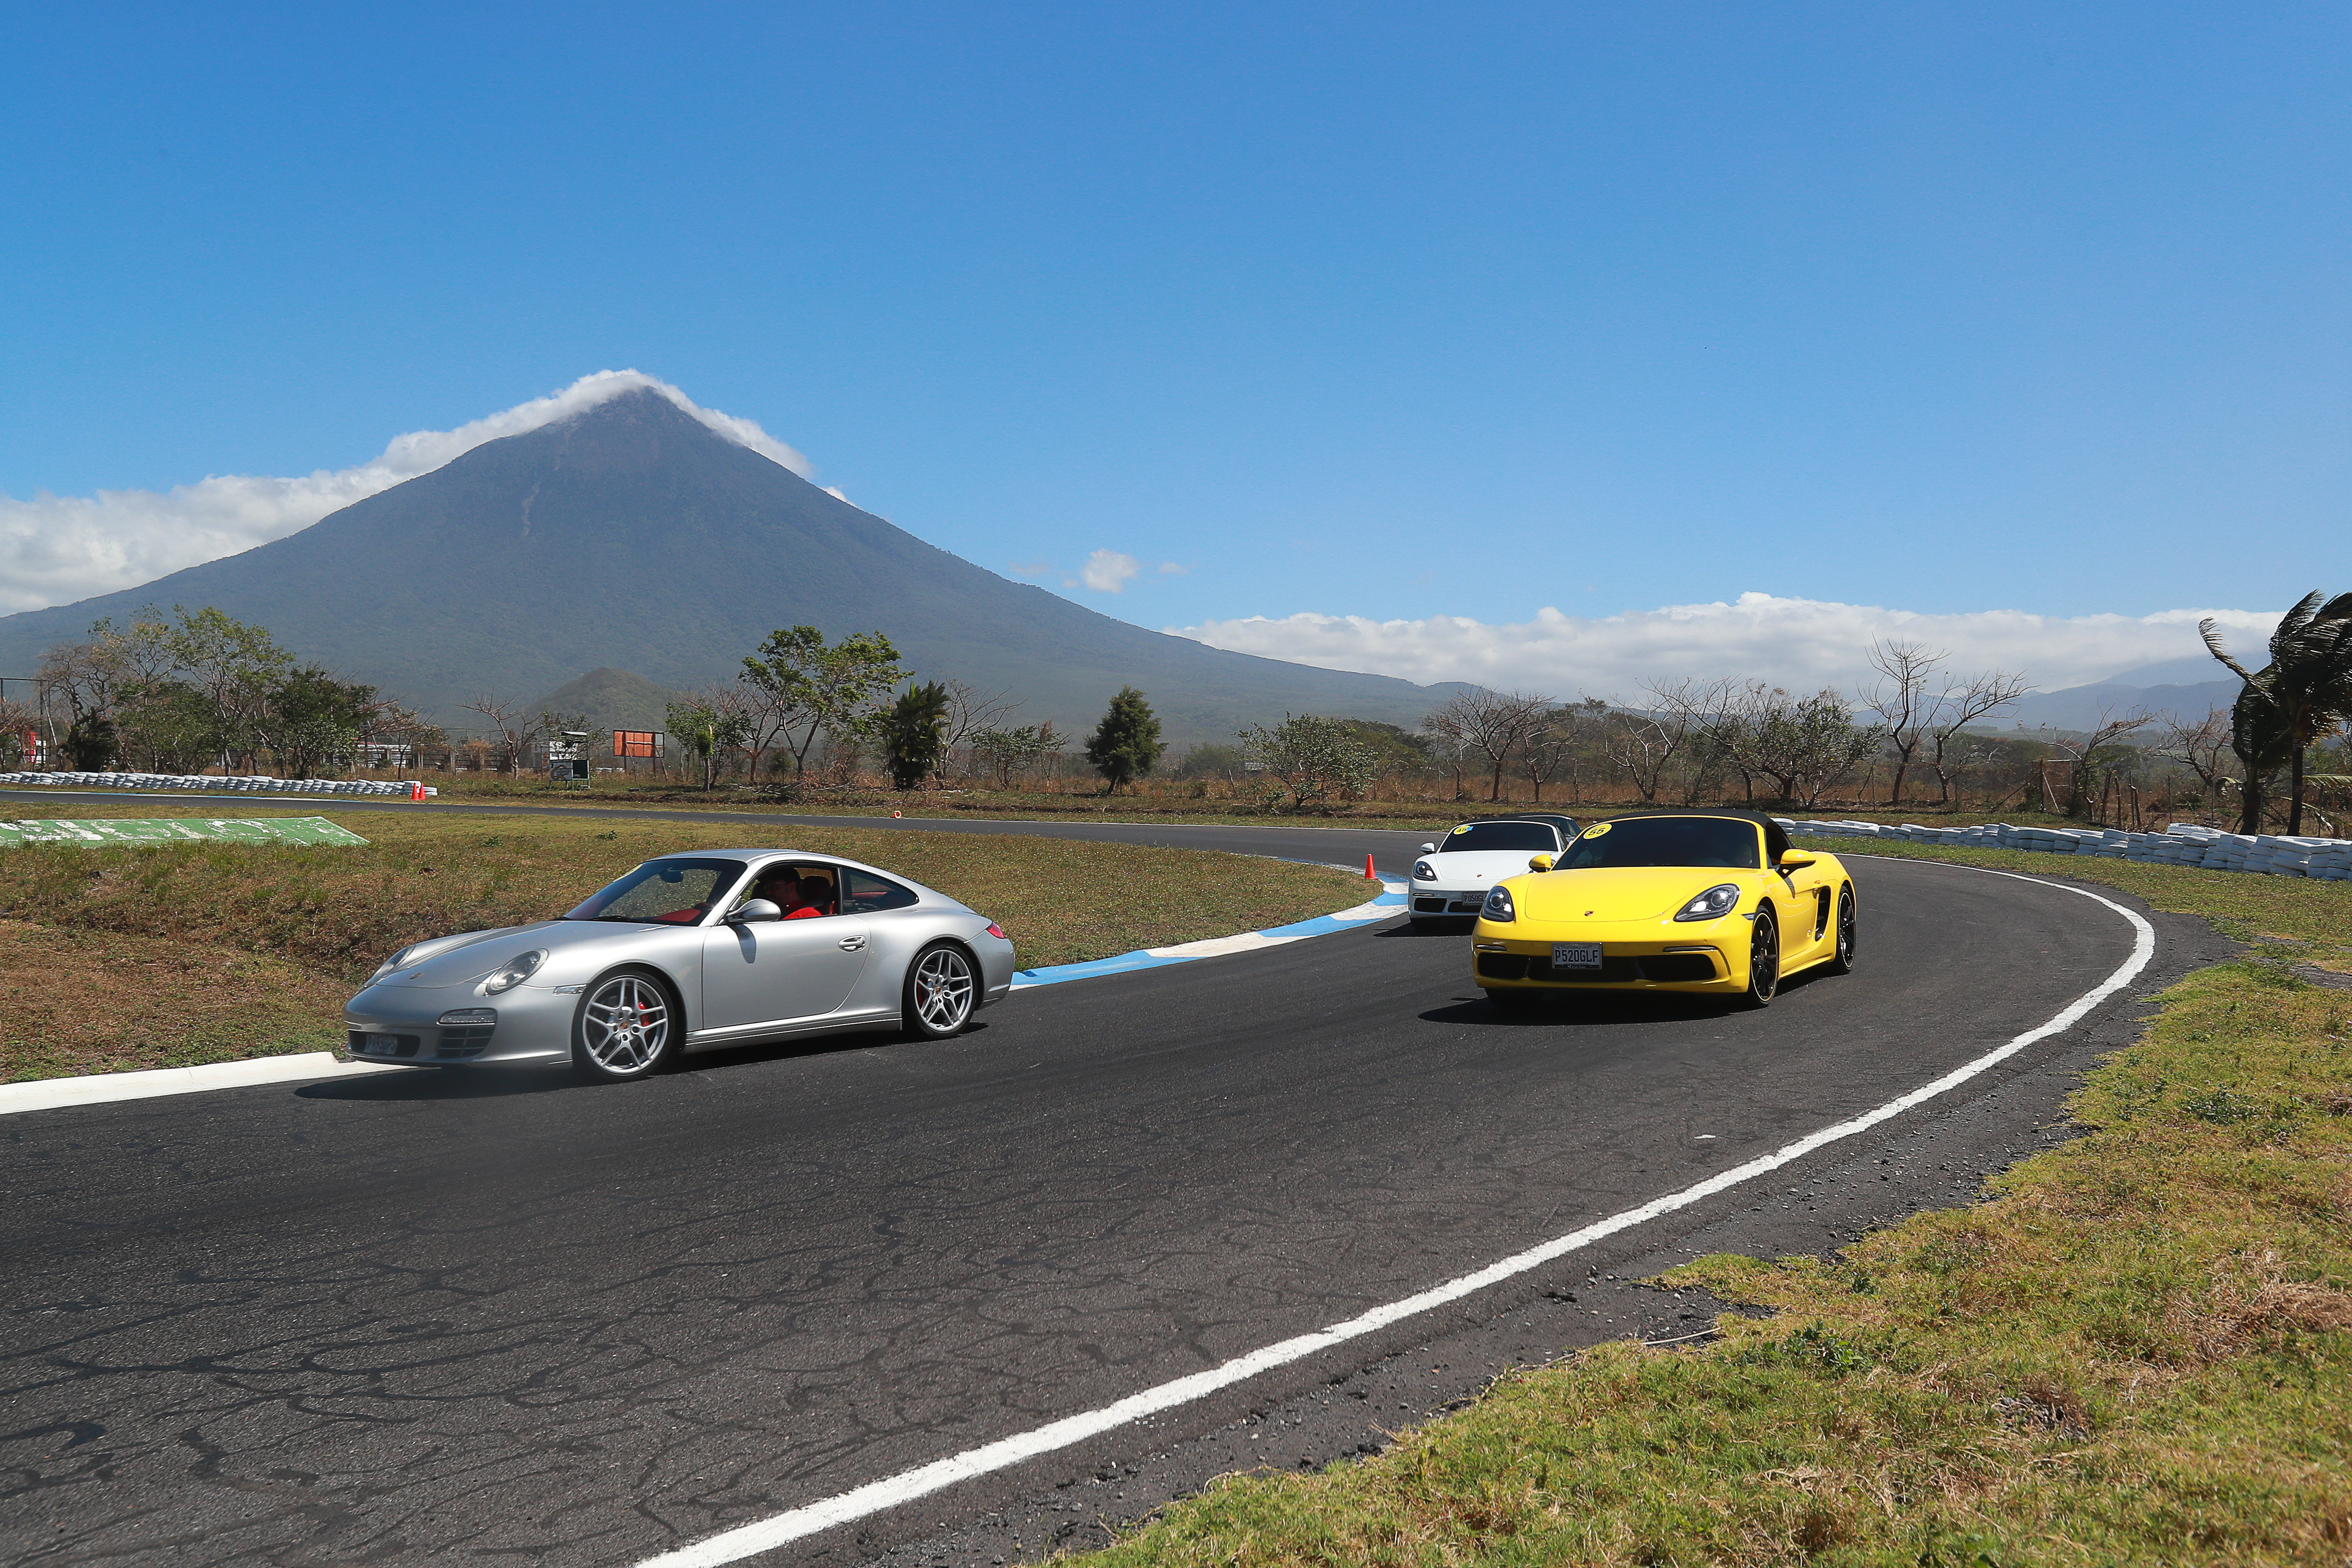 Una inolvidable experiencia viven los amantes de los vehículos Porsche en Guatemala. Foto Prensa Libre: Cortesía